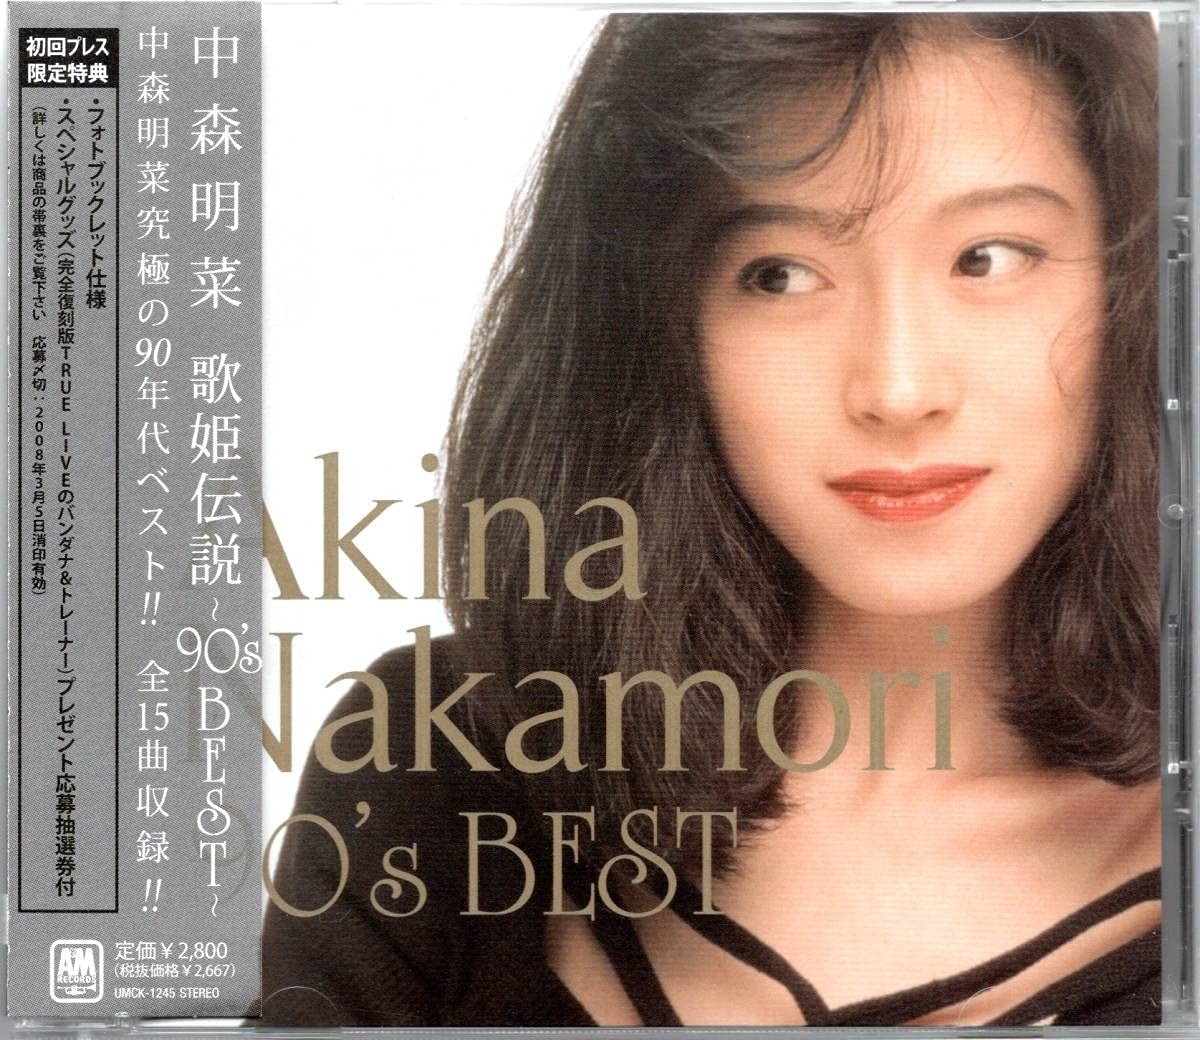 中森明菜 (Akina Nakamori) – 歌姫伝説 ~90’s BEST~ [FLAC / CD] [2008.02.27]